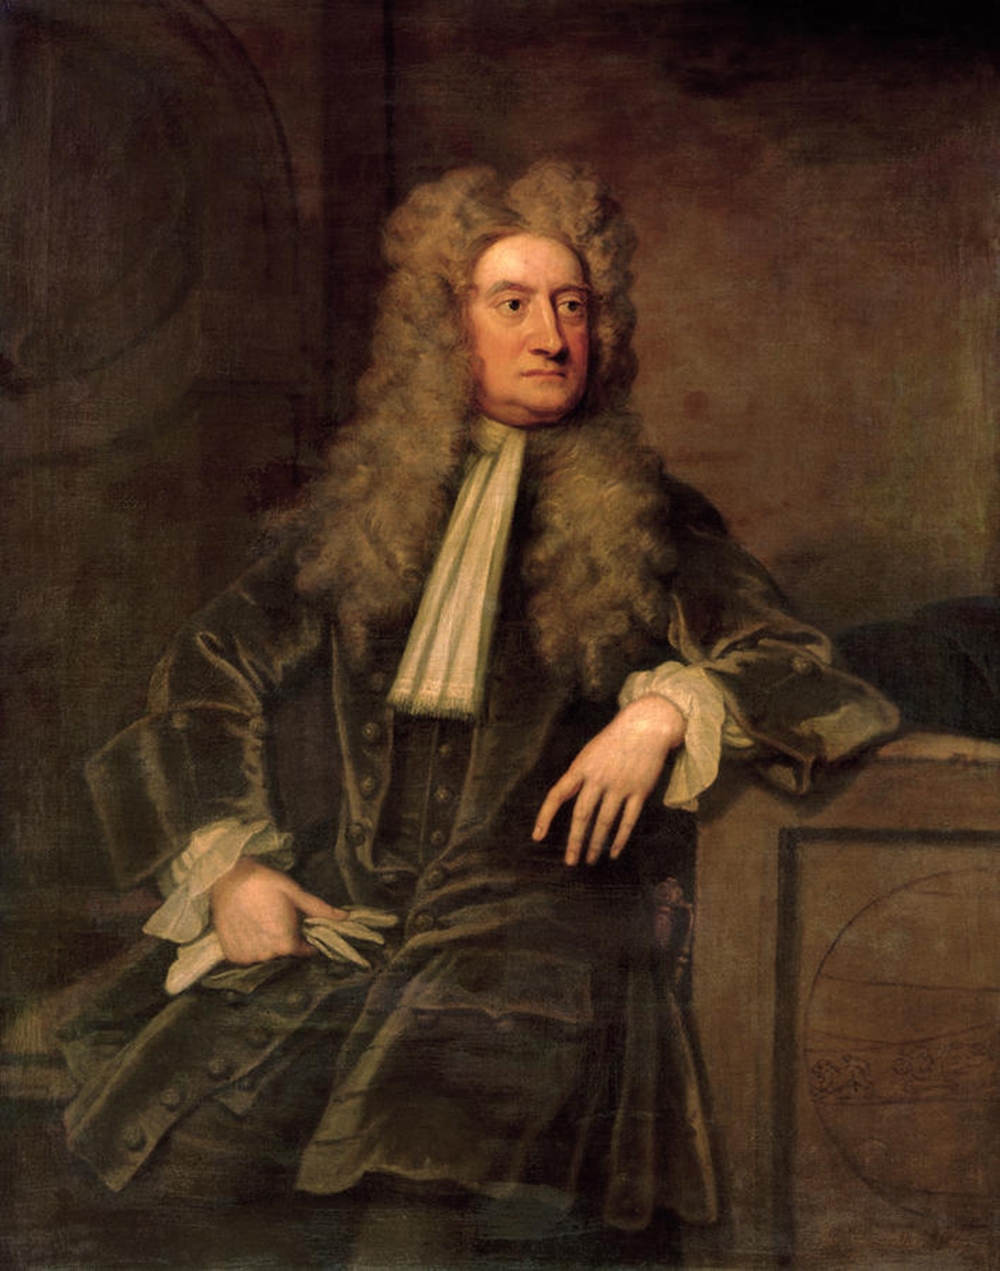 Исаак Ньютон (1642-1727)